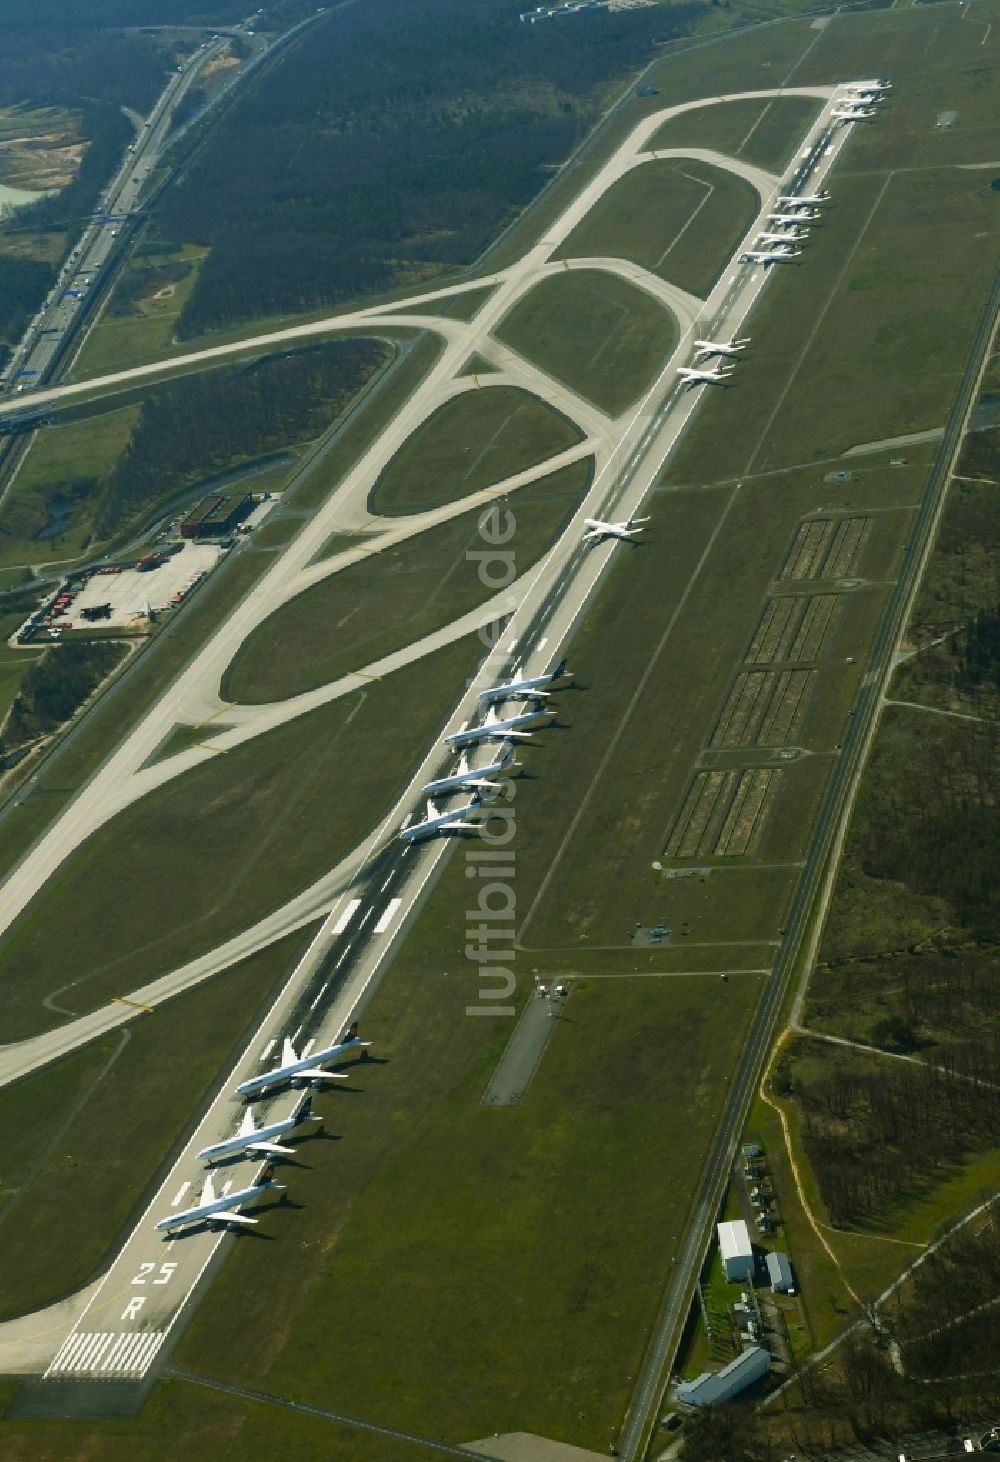 Luftbild Kelsterbach - Krisenbedingt abgestellte Passagierflugzeuge auf dem Flughafen Frankfurt Airport in Kelsterbach im Bundesland Hessen, Deutschland